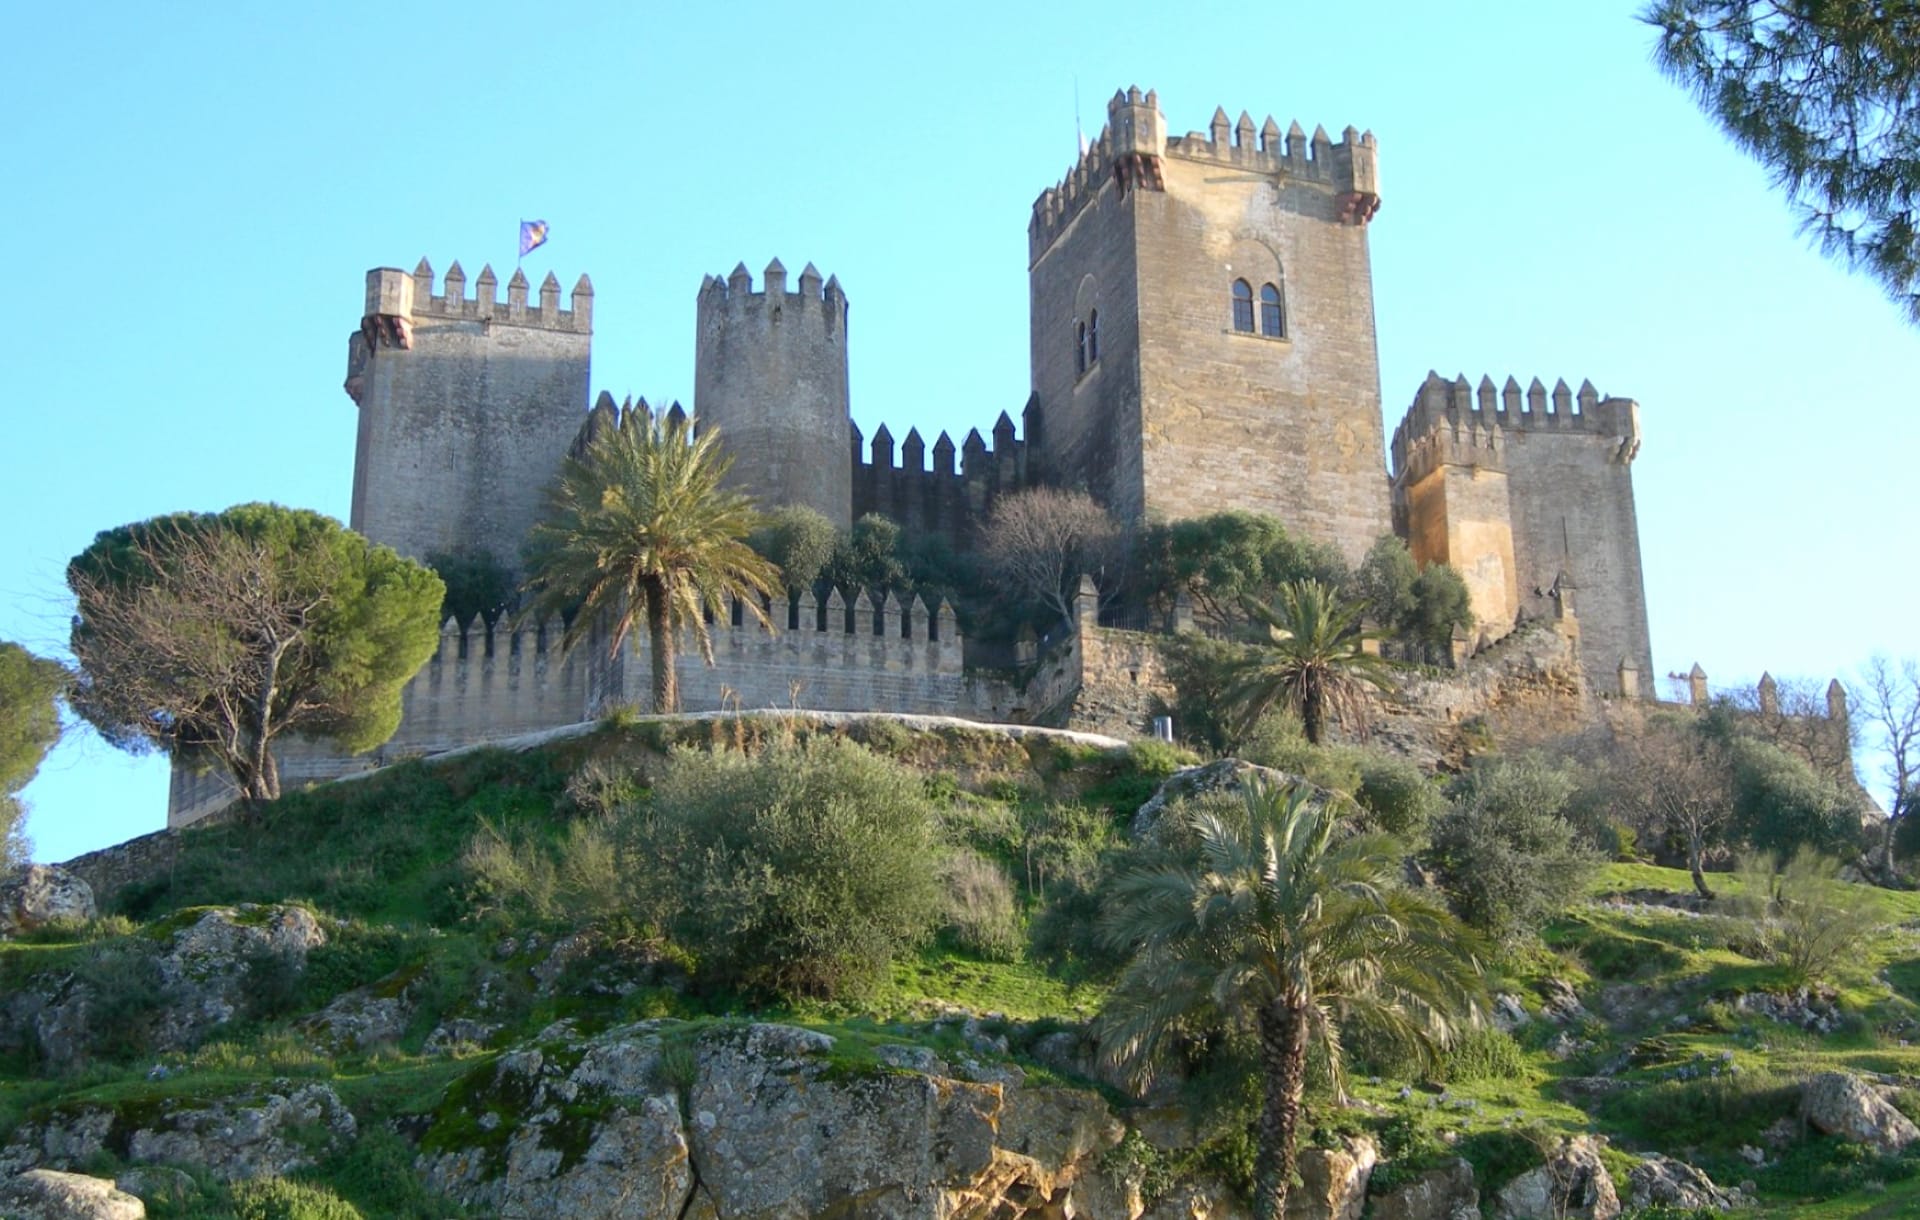 Castillo de Almodovar del Rio at 1600 x 1200 size wallpapers HD quality